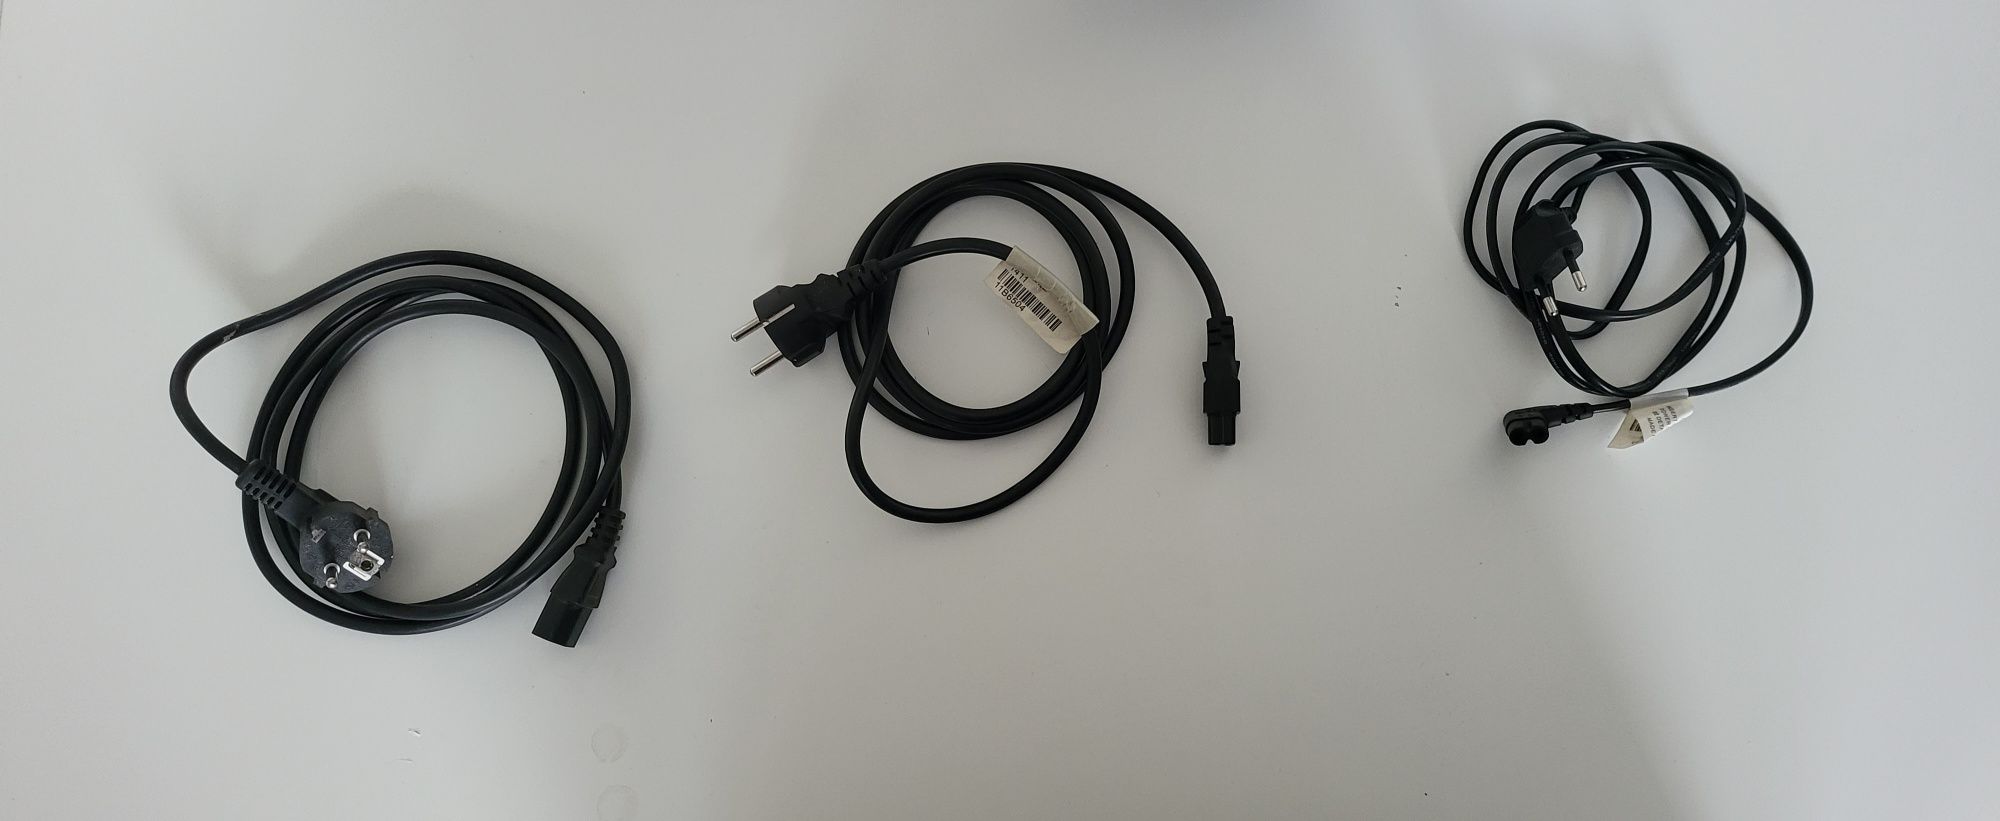 Cabluri pentru laptop-uri